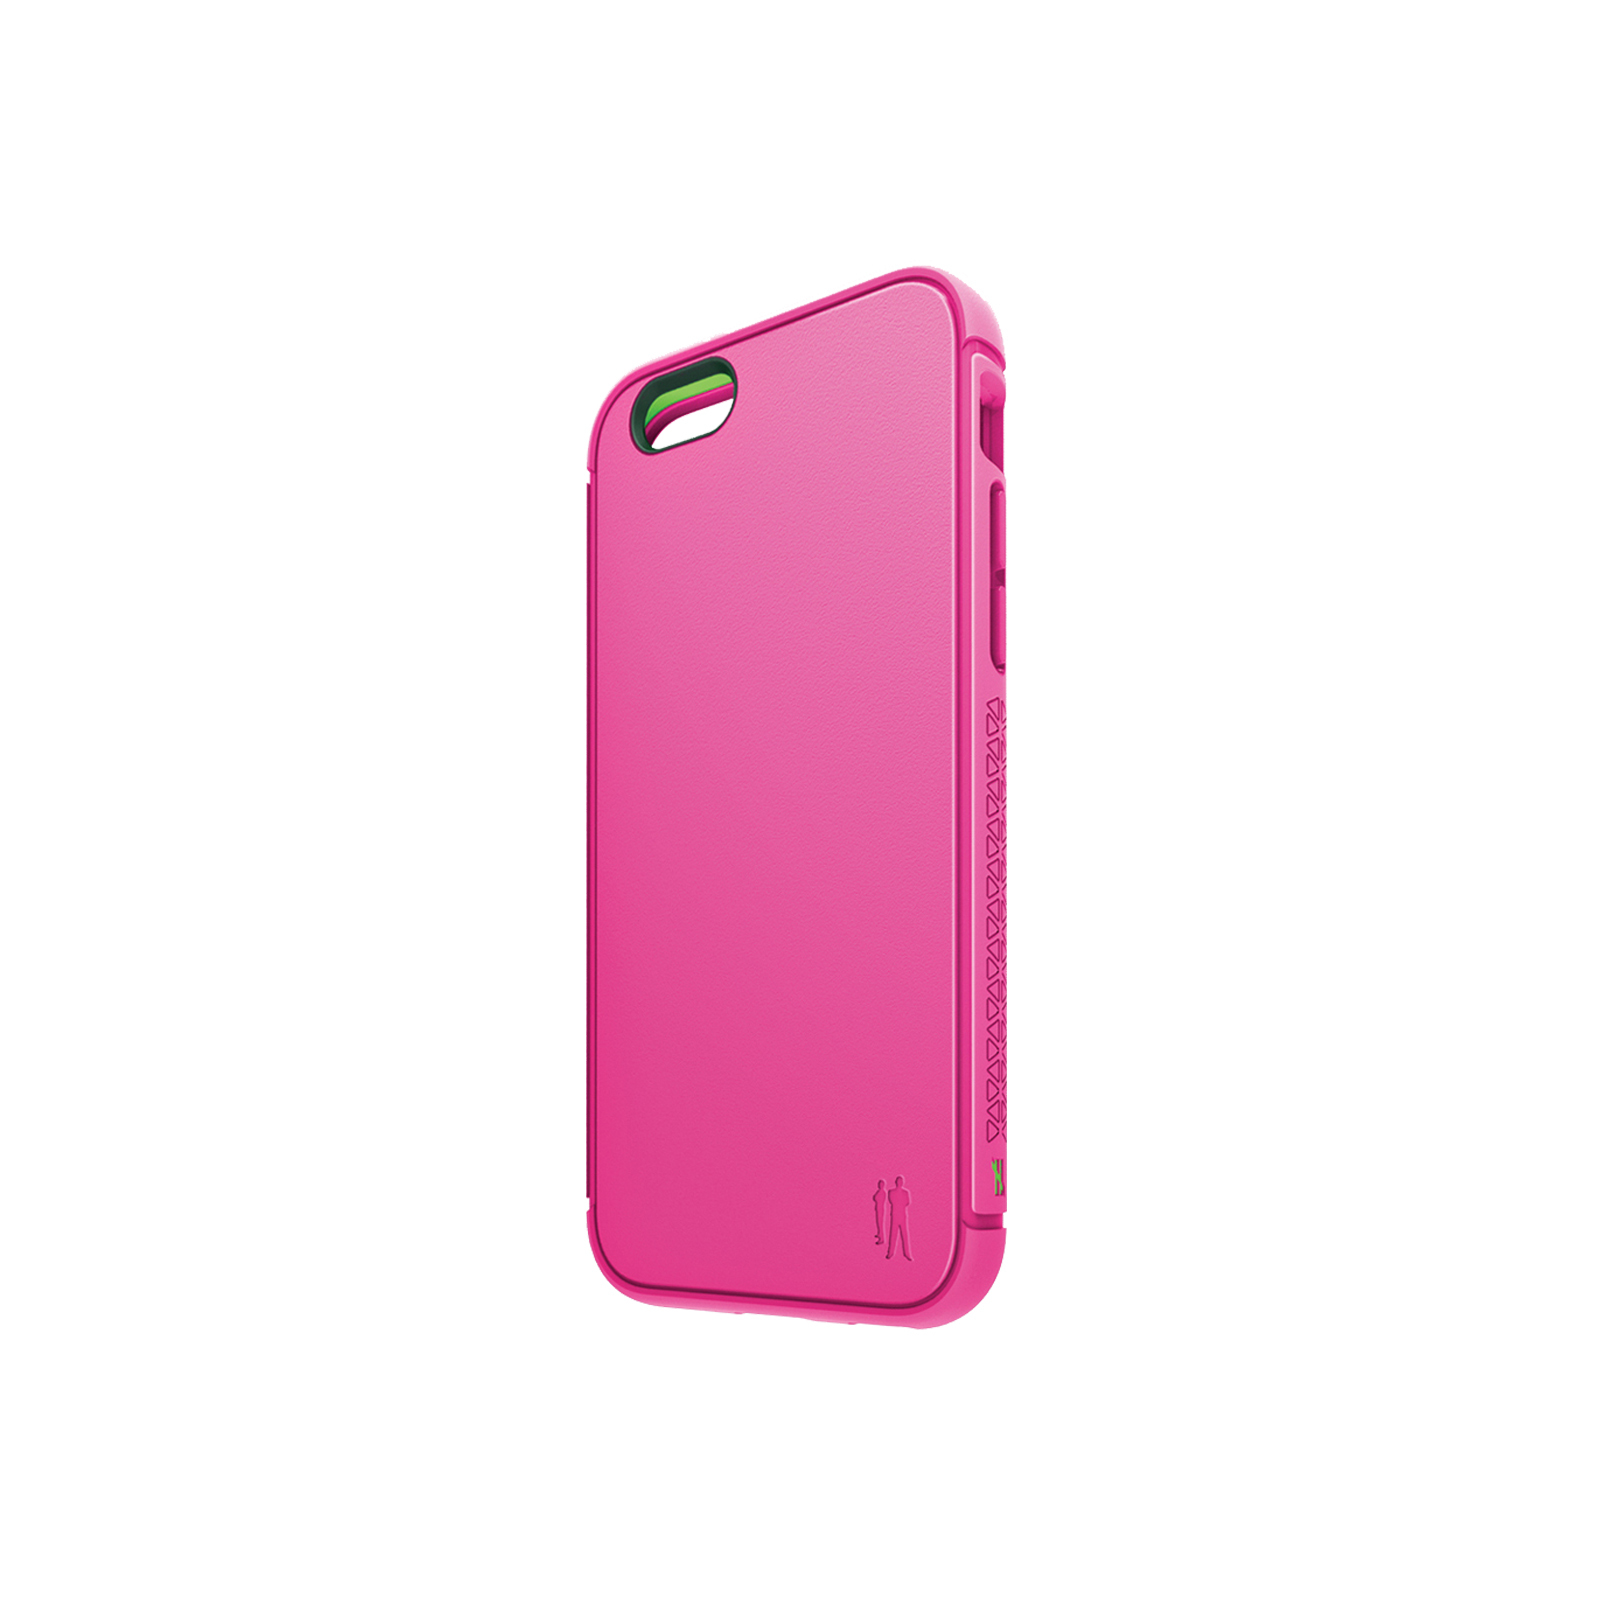 Shock iPhone 6 Plus / 7 Plus / 8 Plus Case [Pink]